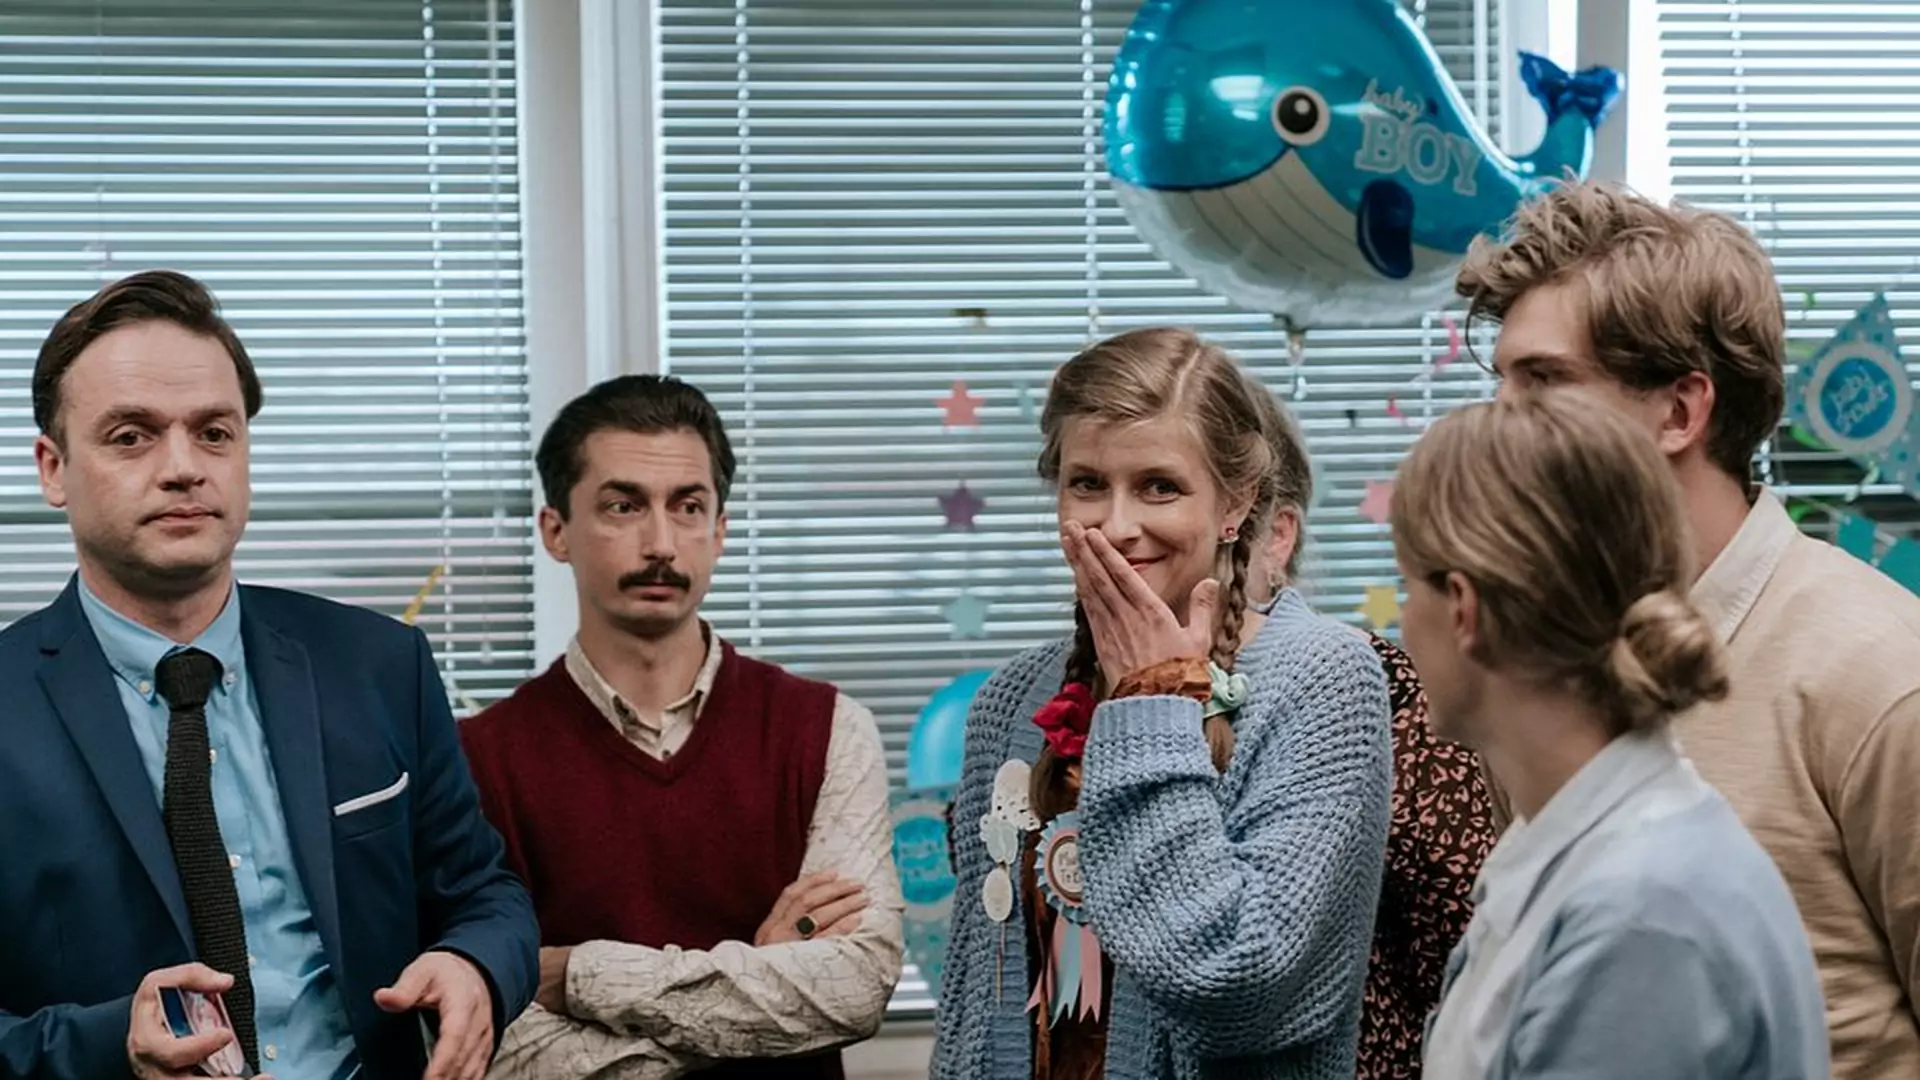 Lanie wody czy fala dobrych żartów? Obejrzeliśmy drugi sezon polskiego "The Office"